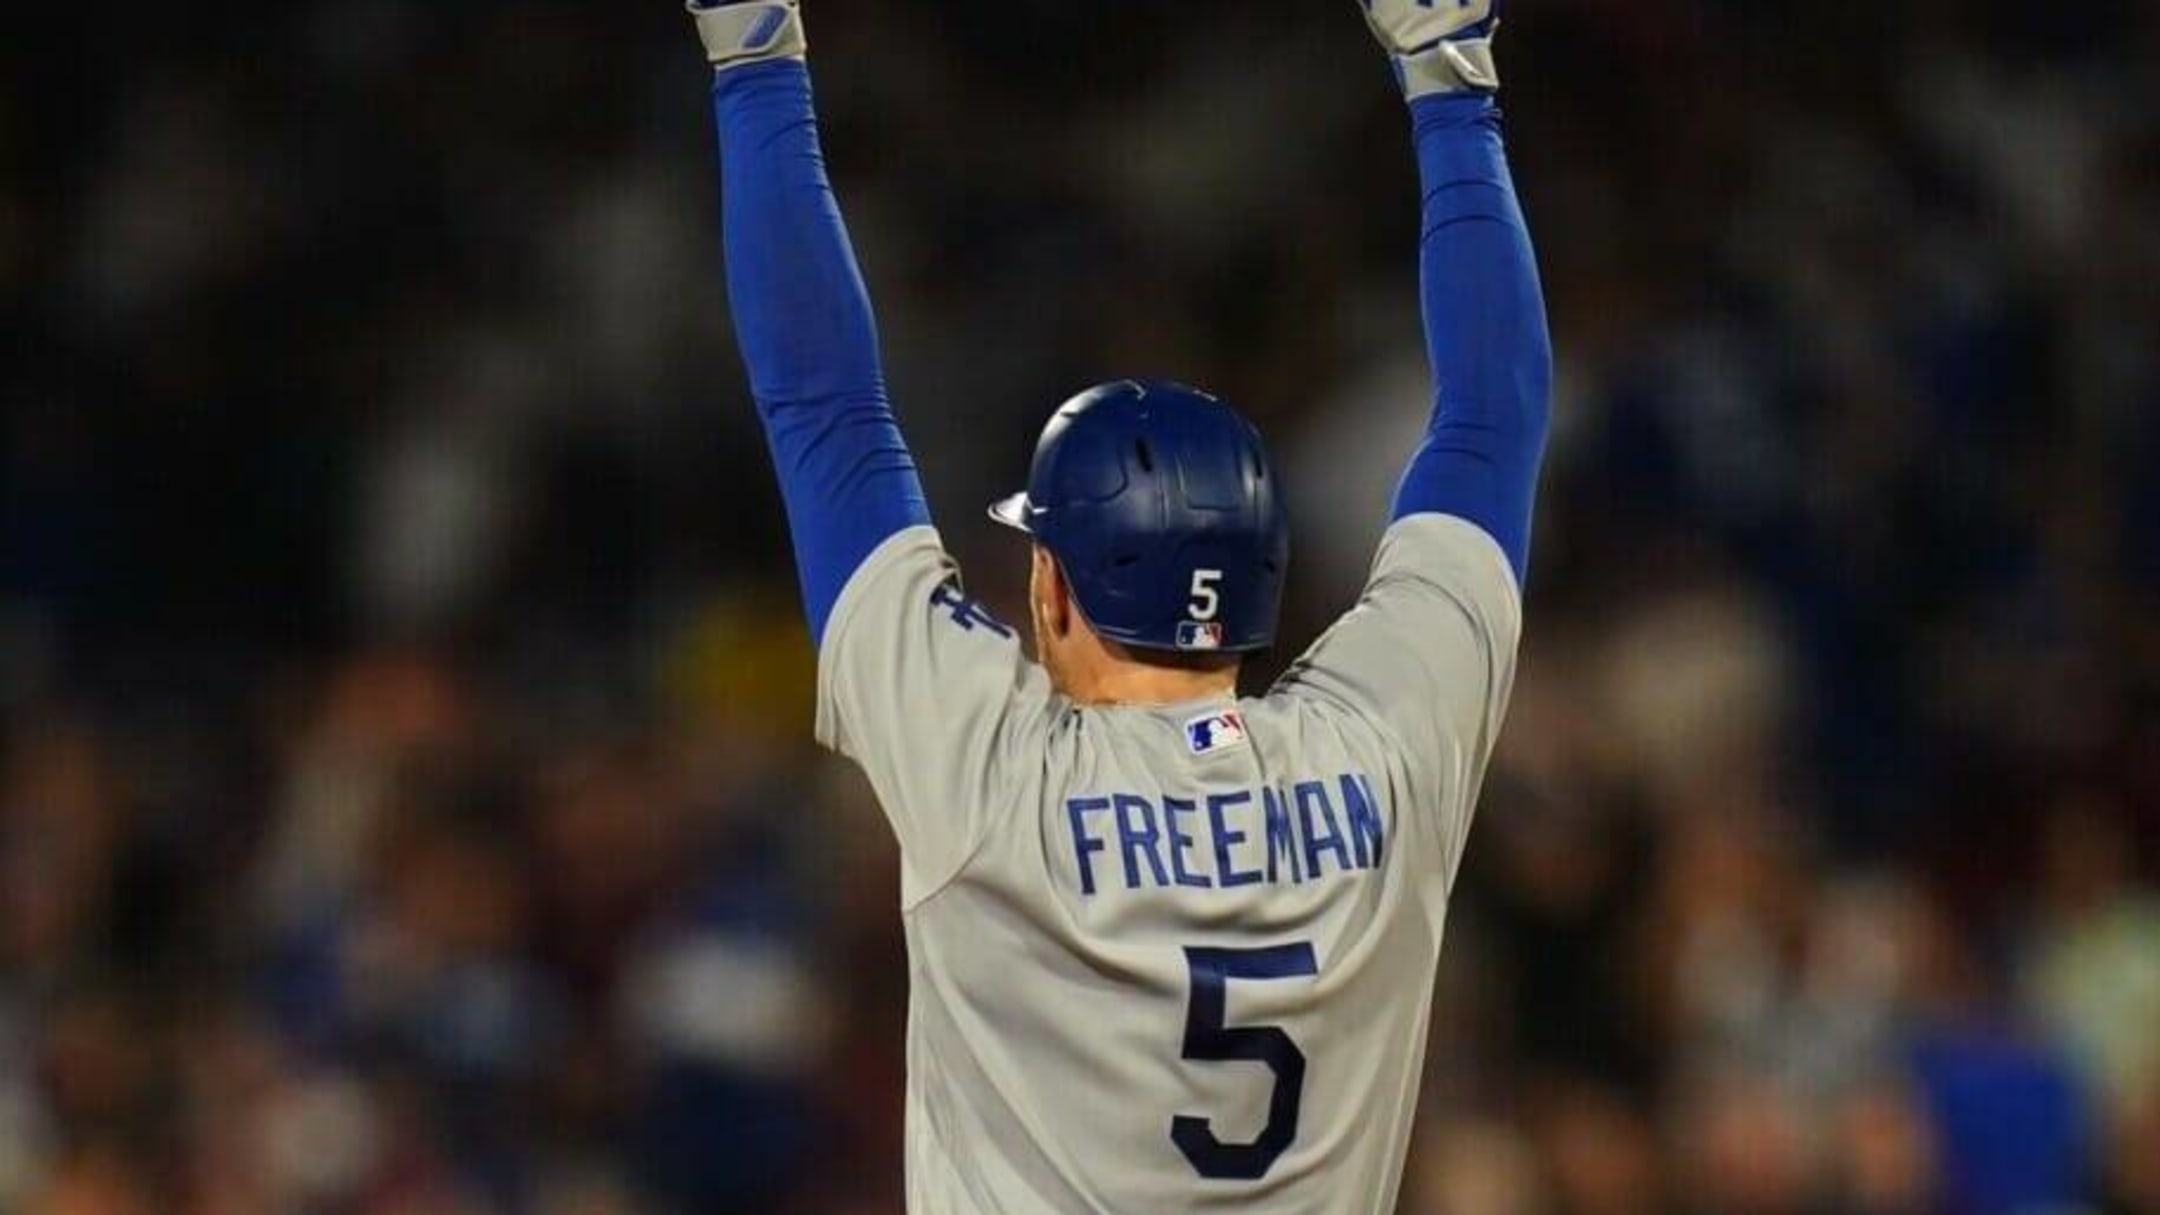 Freddie Freeman 5 Los Angeles Dodgers baseball player Vintage